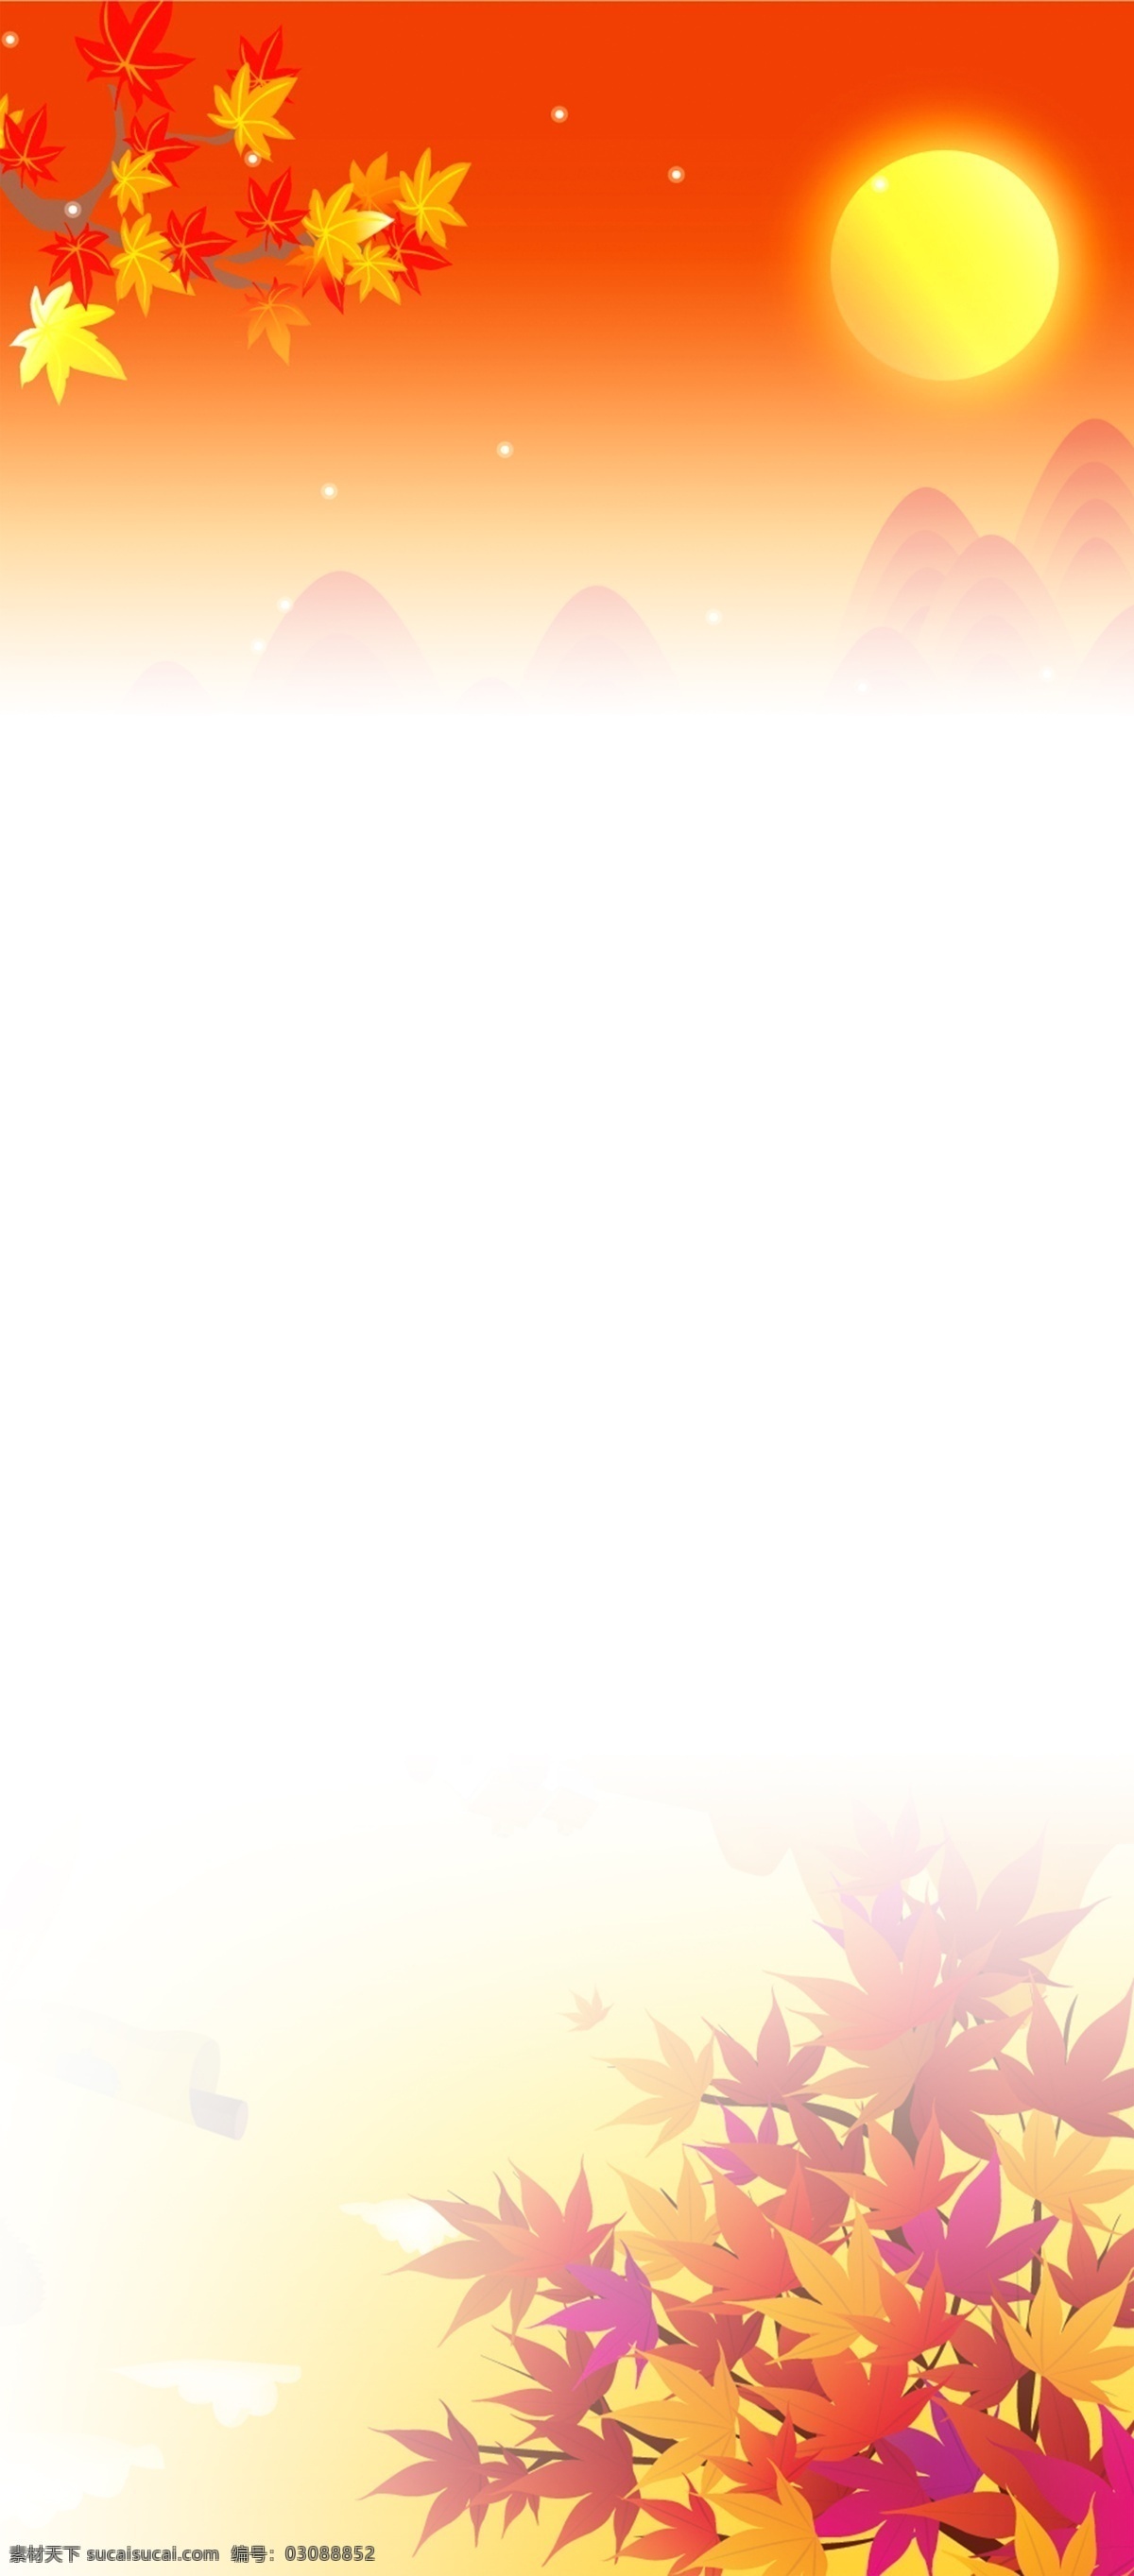 秋天 网站 海报 背景图片 枫叶 海报背景 红色 黄色 网页背景 网站模板 主页背景 web 界面设计 中文模板 网页素材 其他网页素材